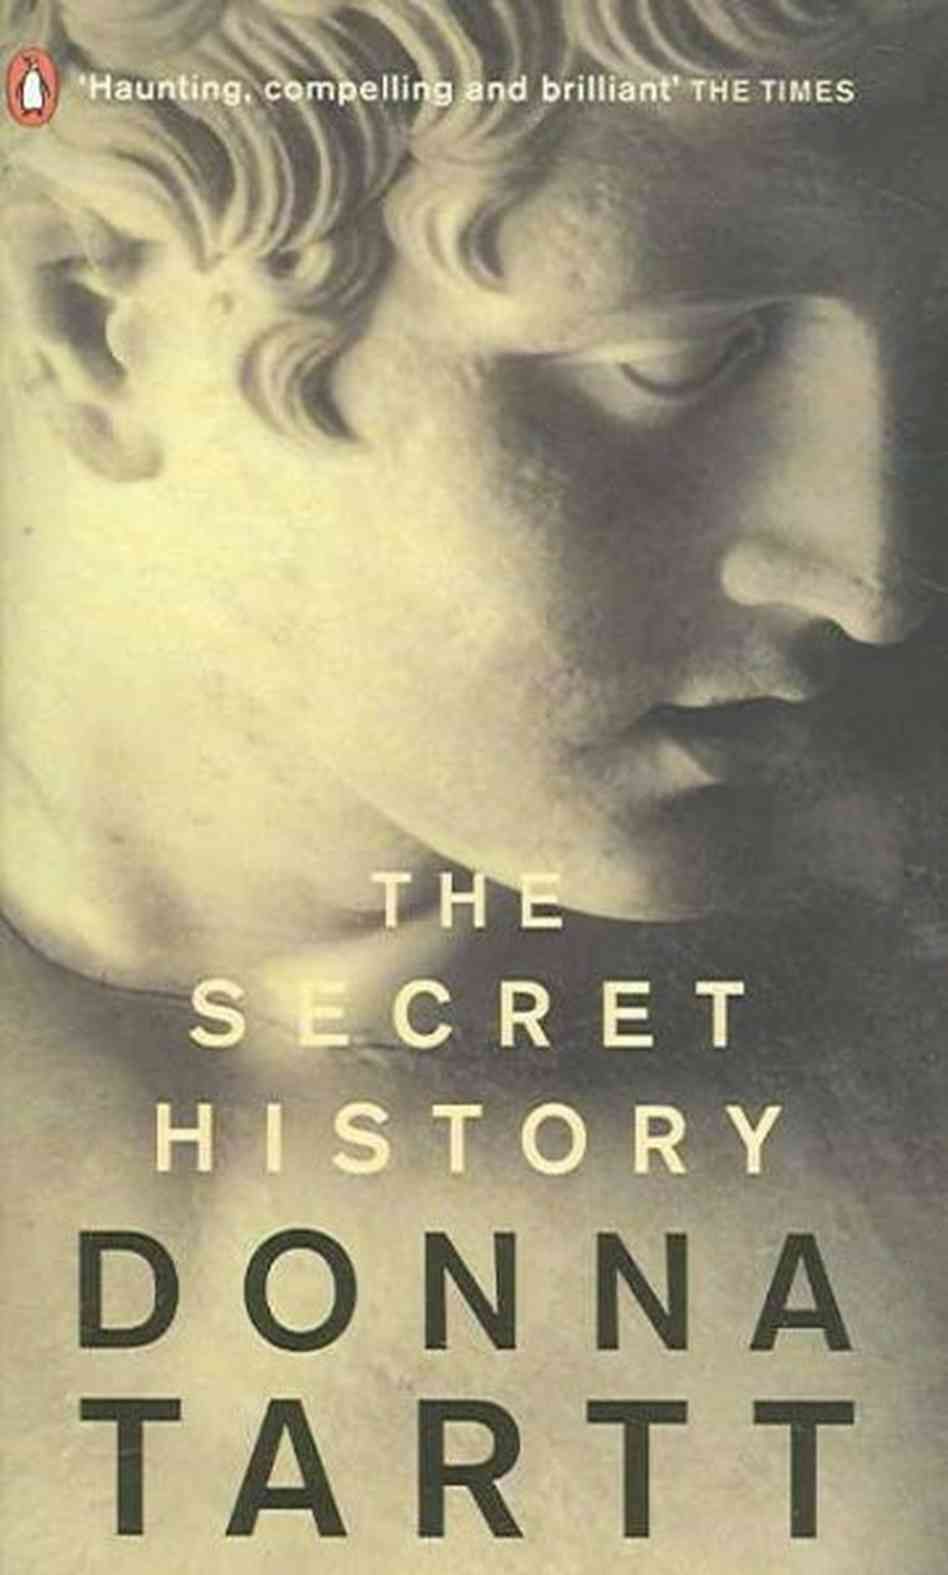 books similar to the secret history